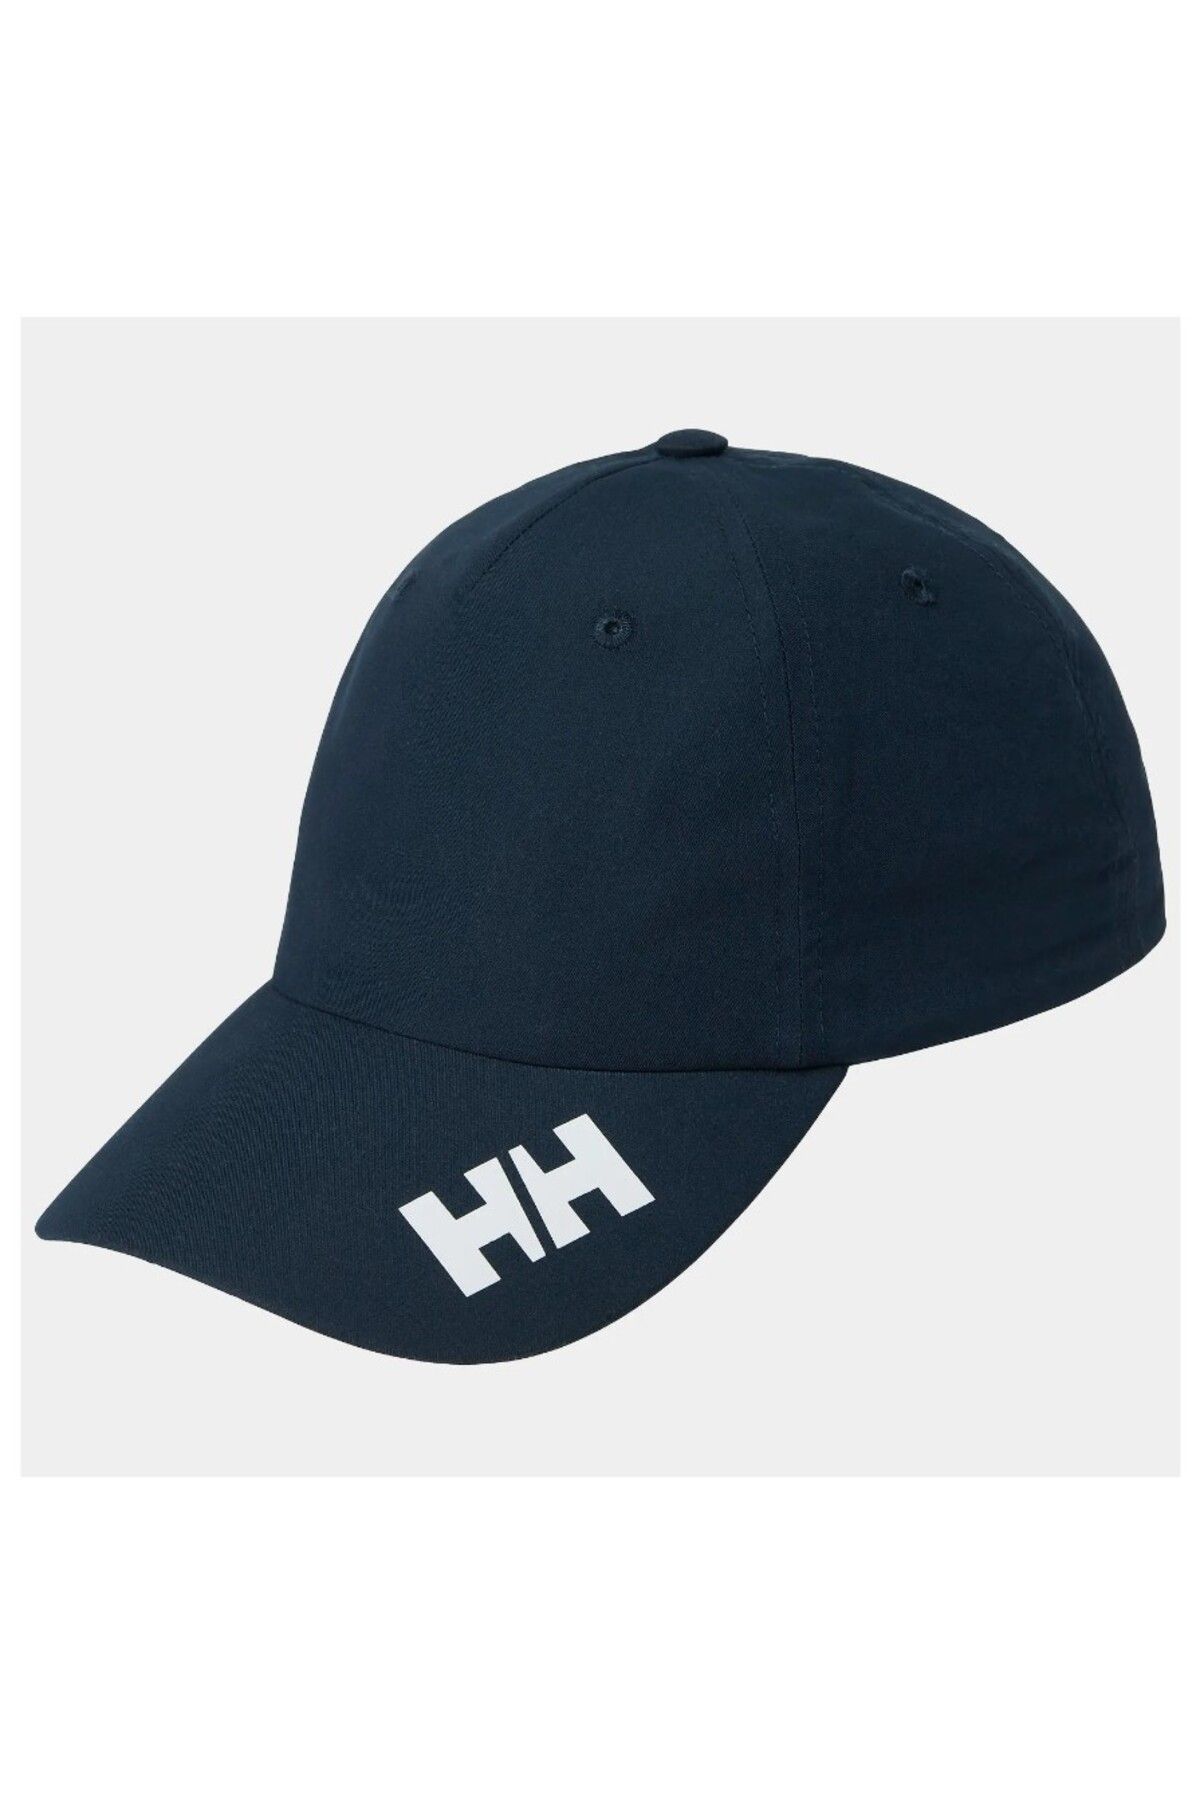 Helly Hansen Crew Şapka 2.0 Unisex Şapka HHA.67517 597